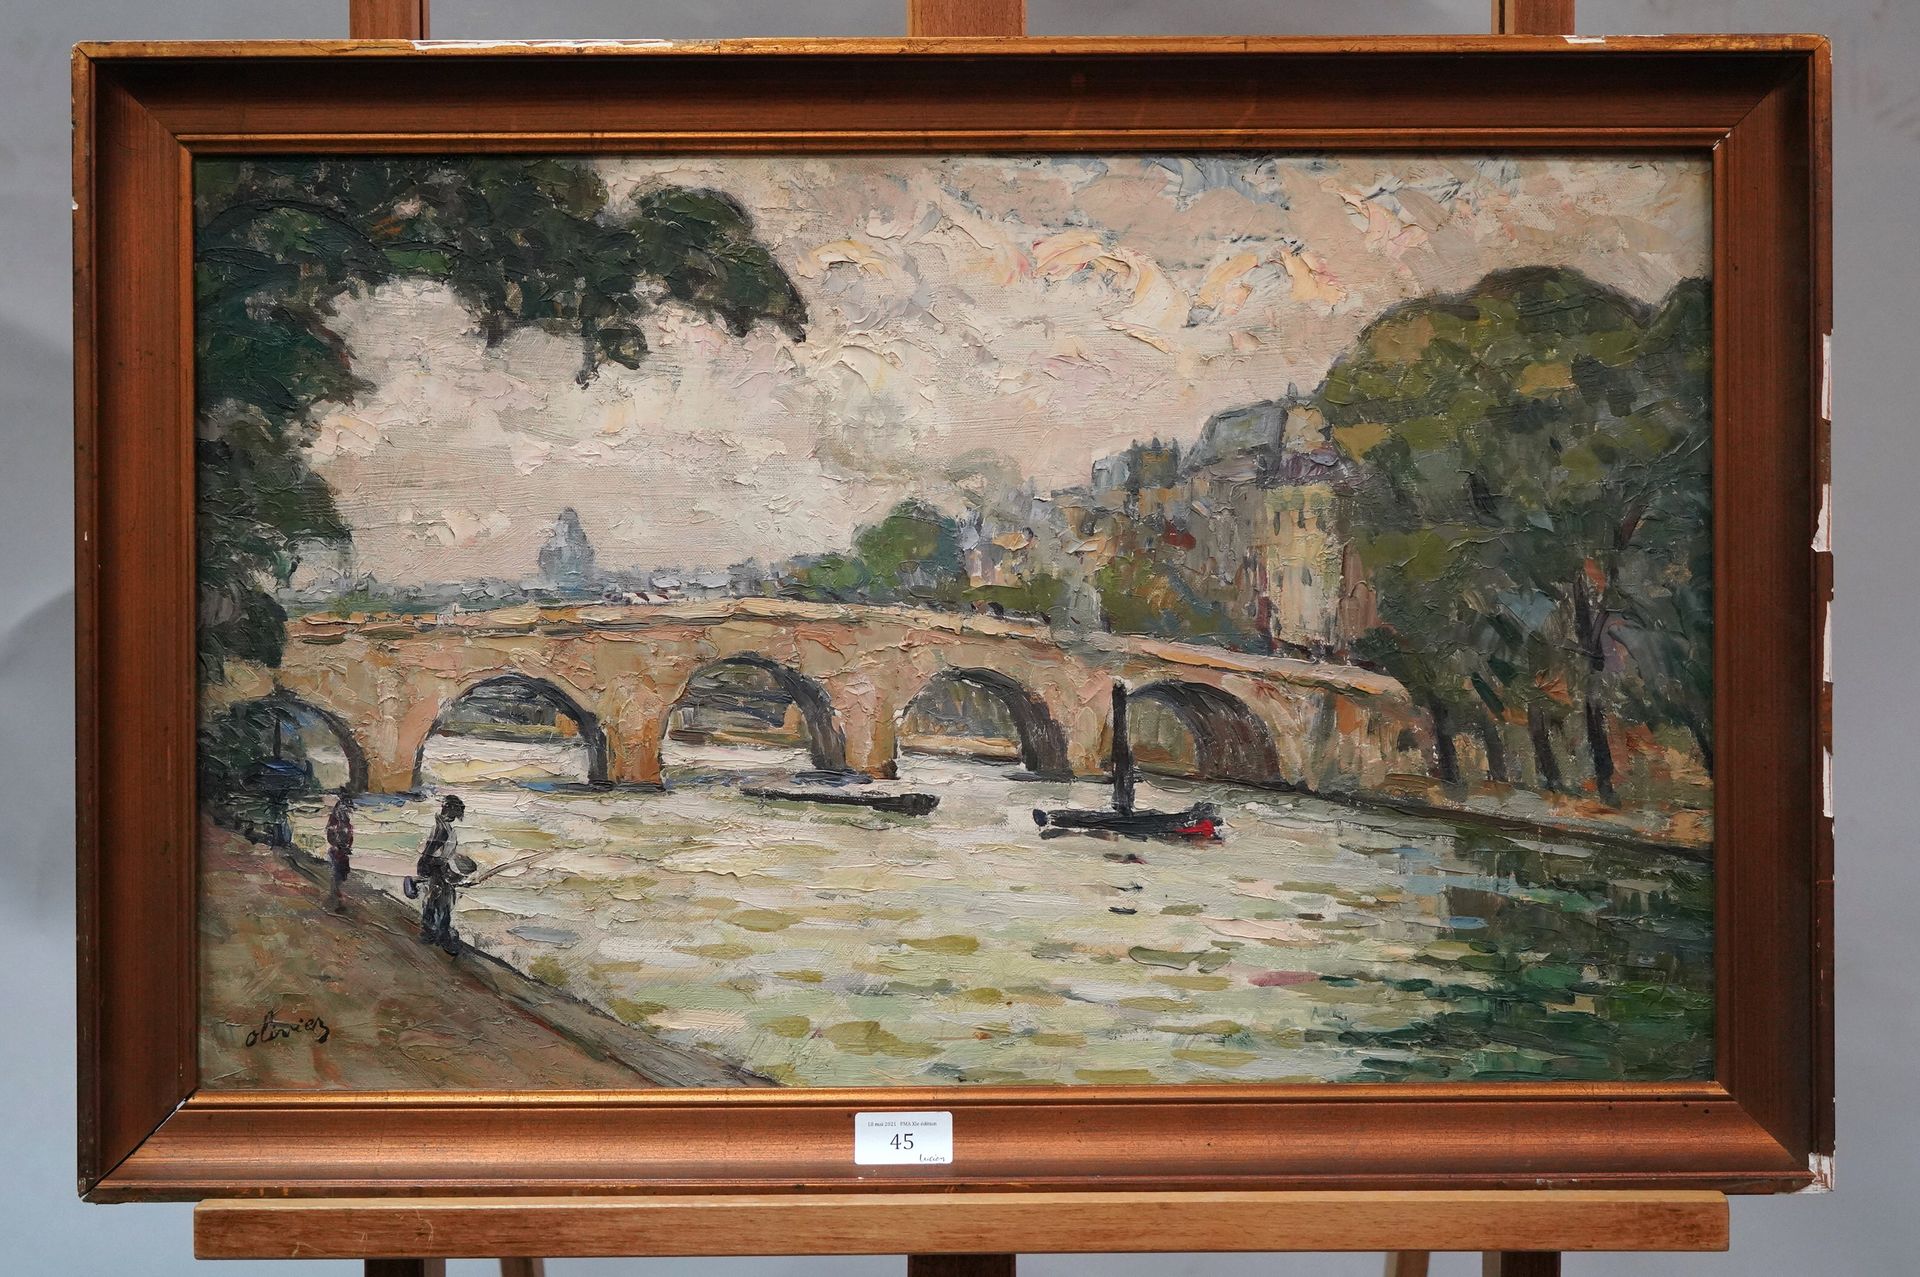 Null 奥利维耶（20世纪

巴黎，玛丽桥

布面油画，左下方有签名。

38,2 x 61,2 cm